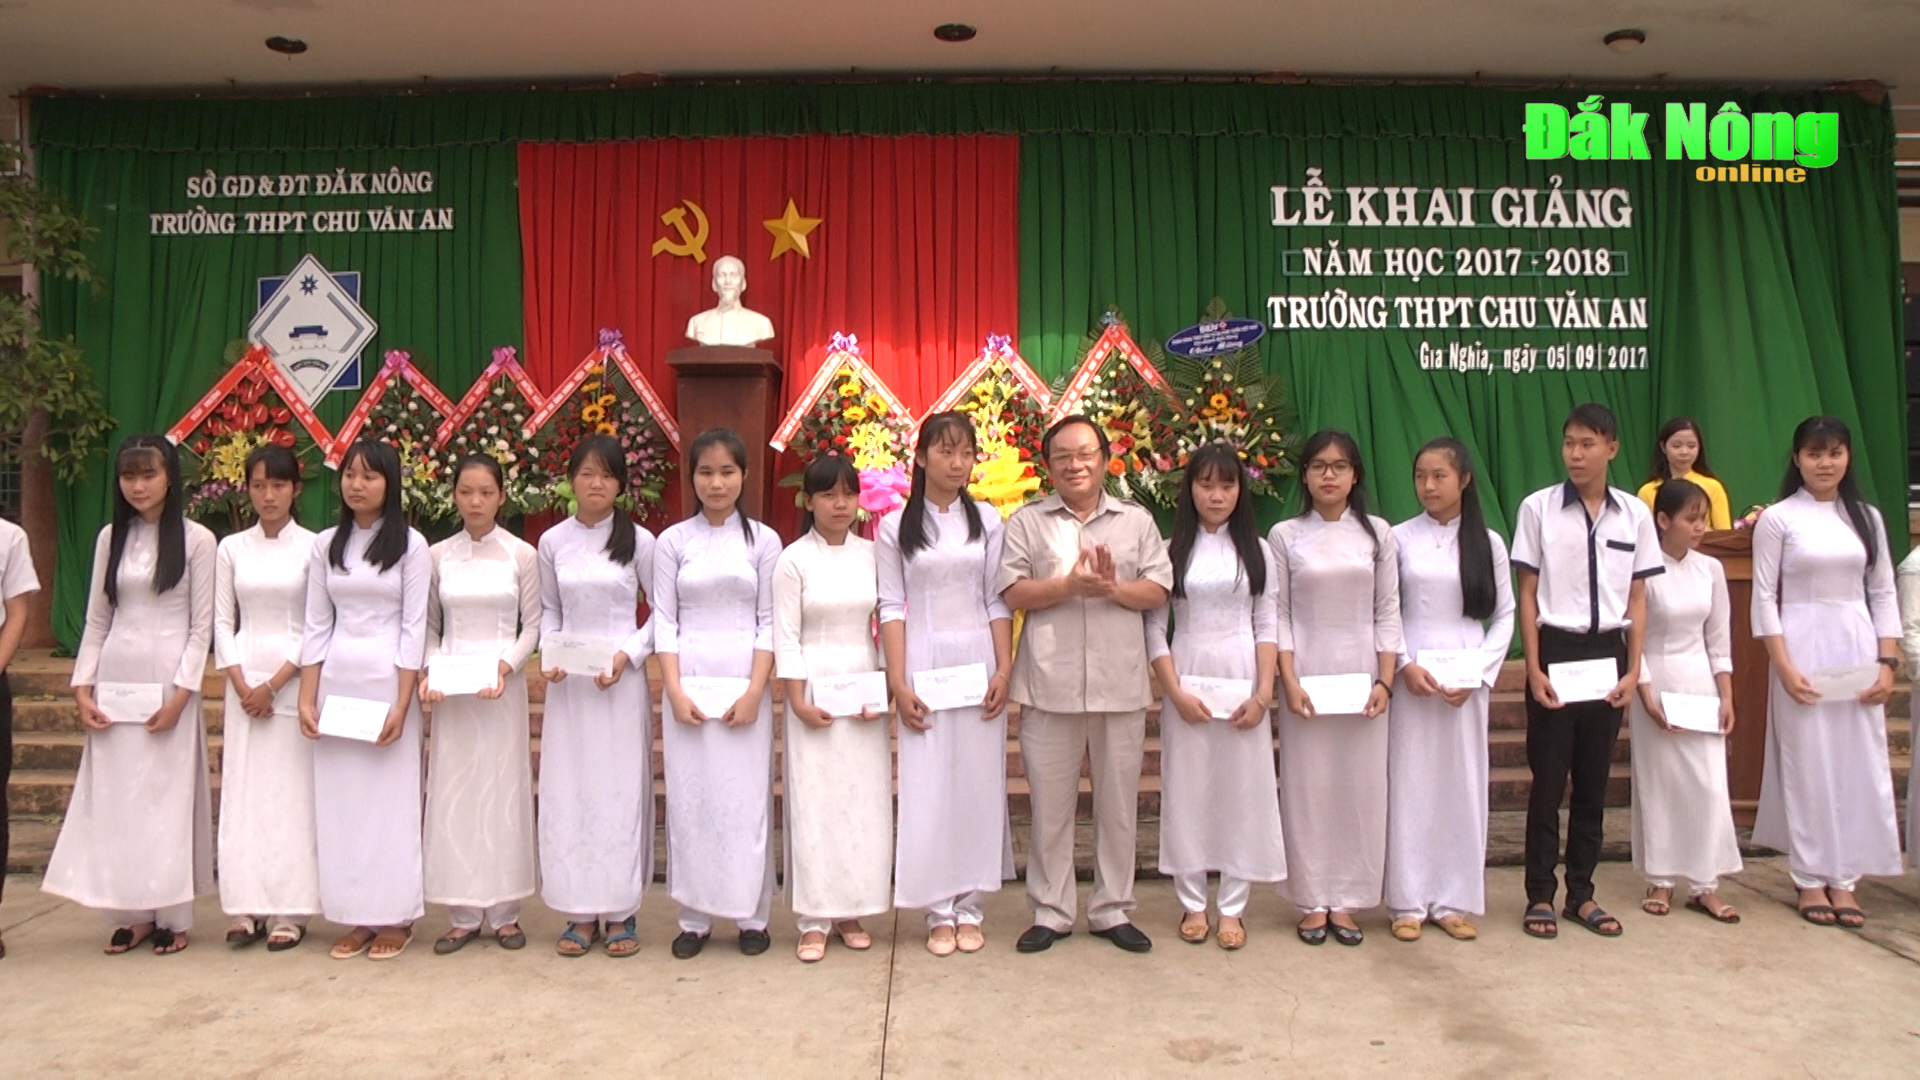 Bí thư Tỉnh ủy dự khai giảng tại Trường THPT Chu Văn An